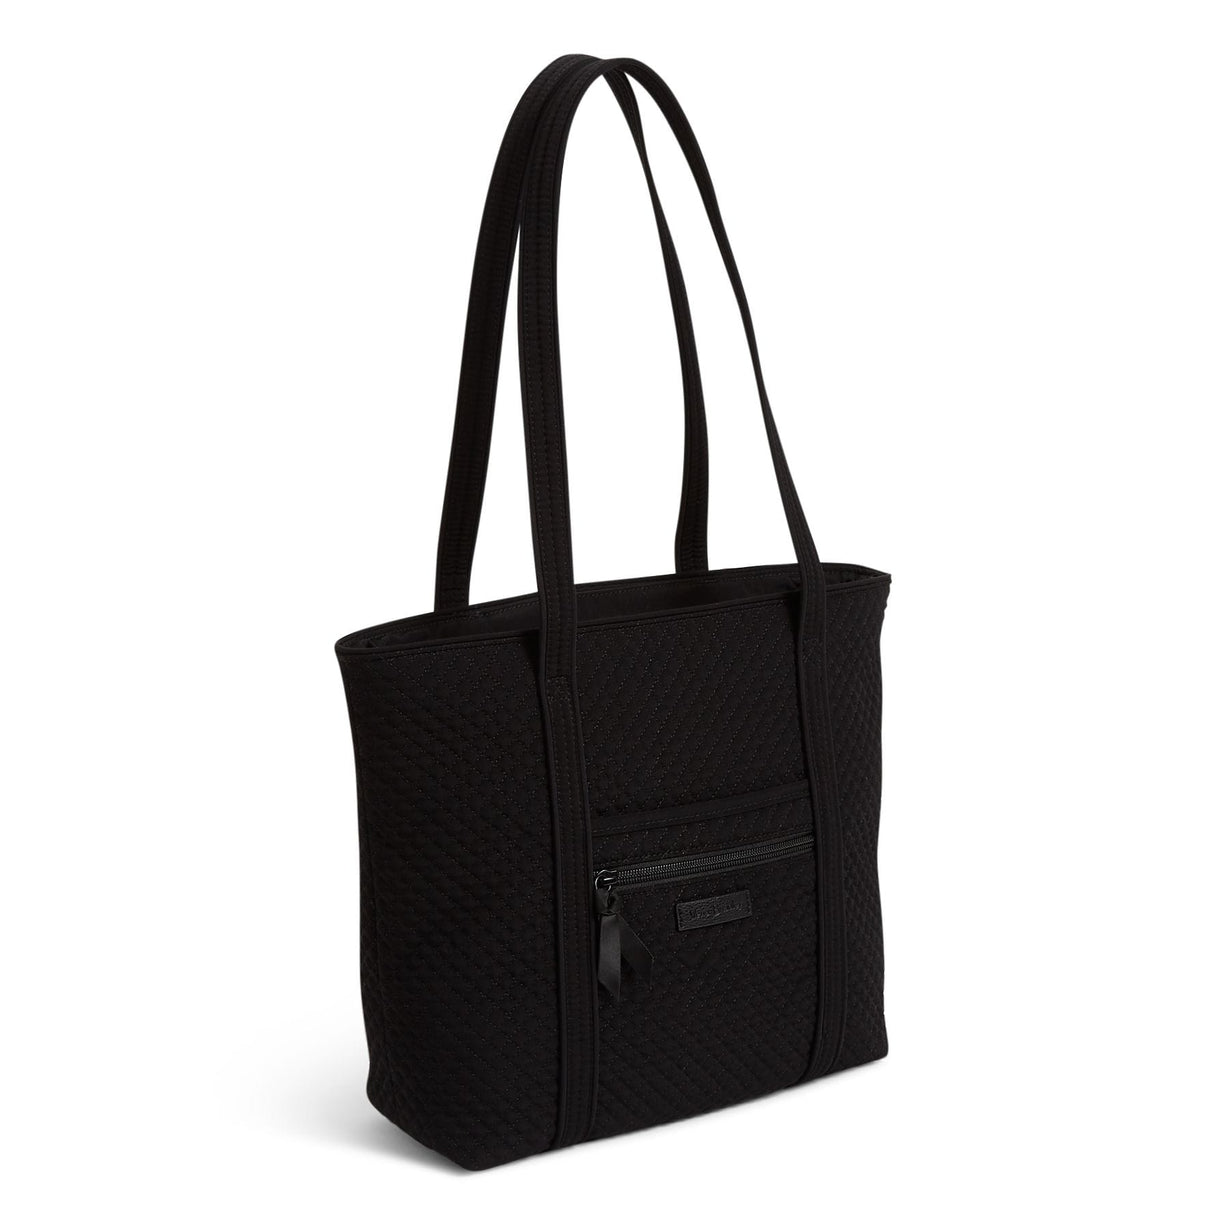 Black Small Vera Tote Bag